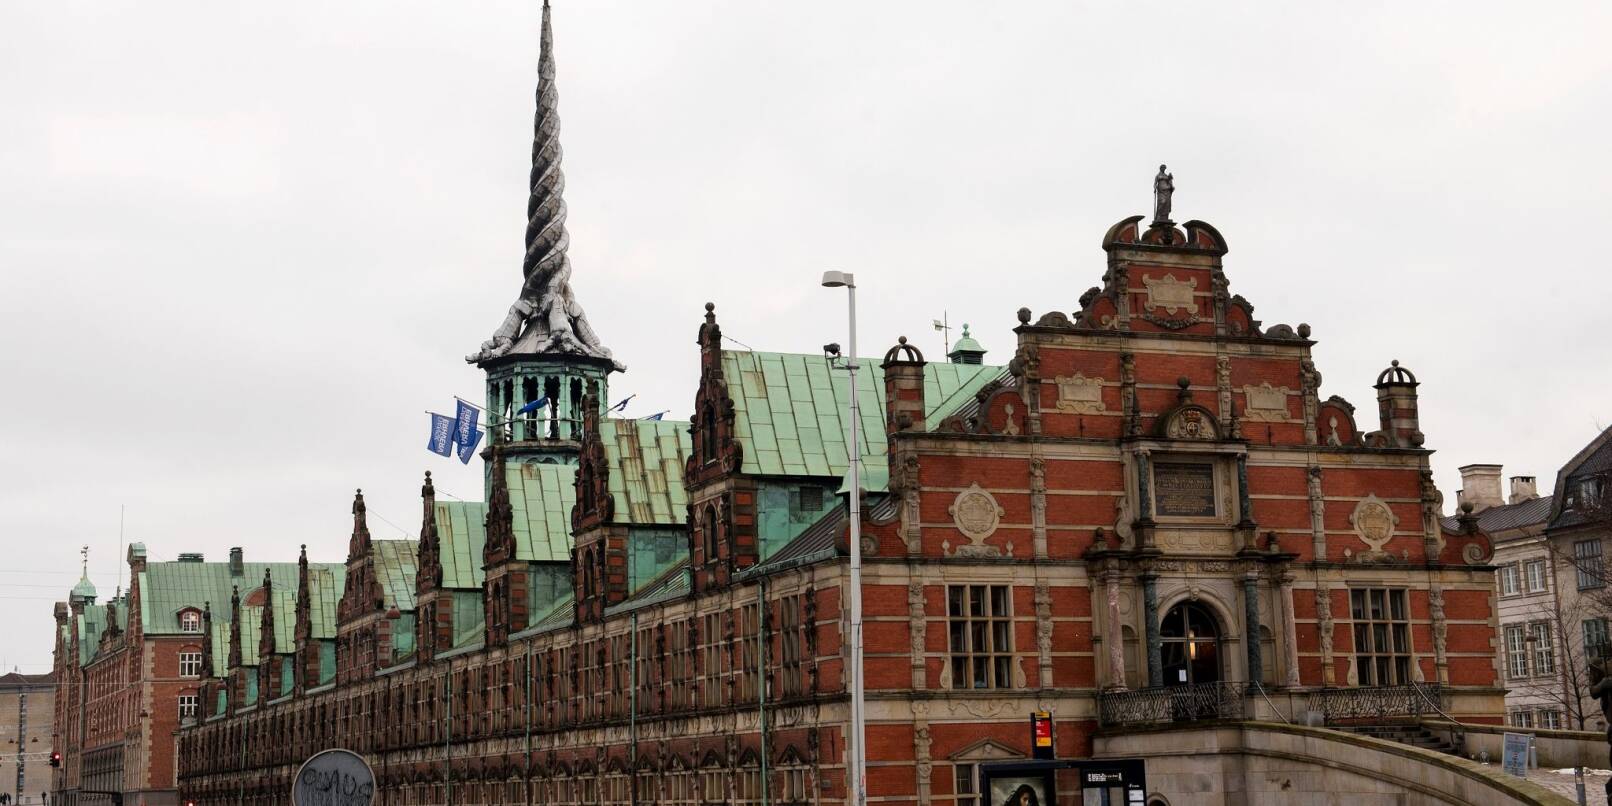 Die Alte Börse in Kopenhagen - Aufnahme von Januar 2019.